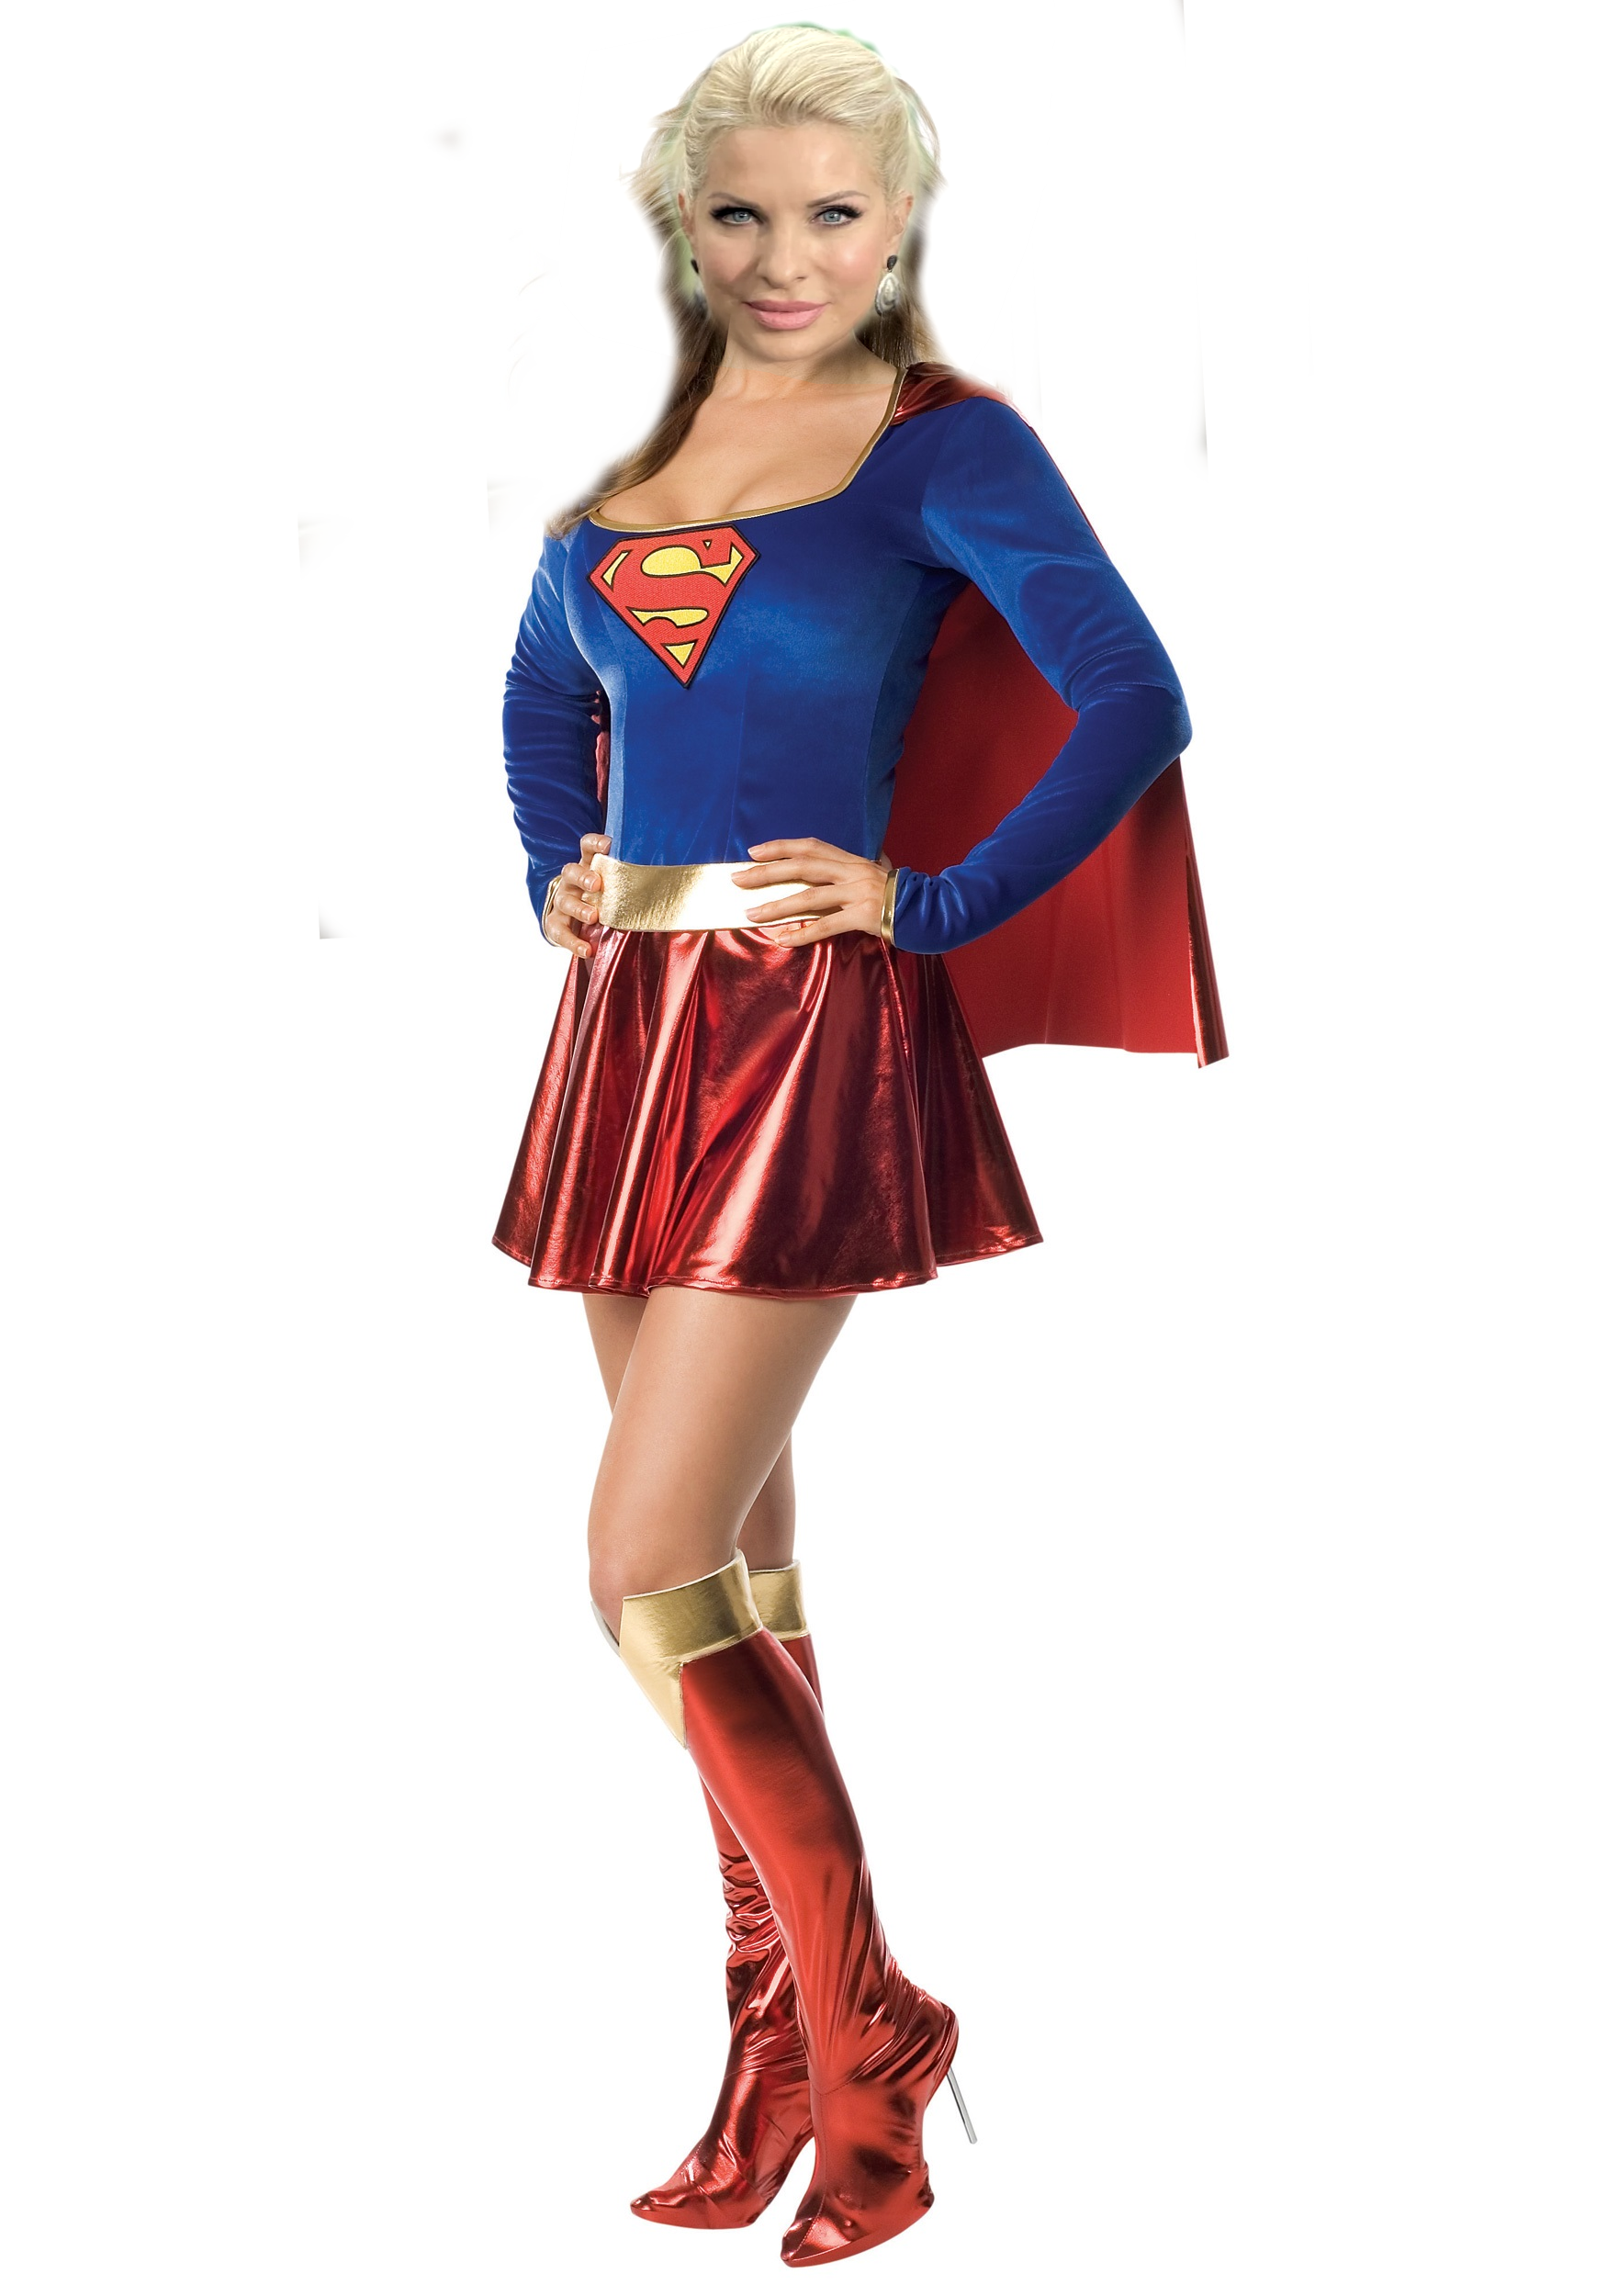 eleni menegaki as supergirl.png